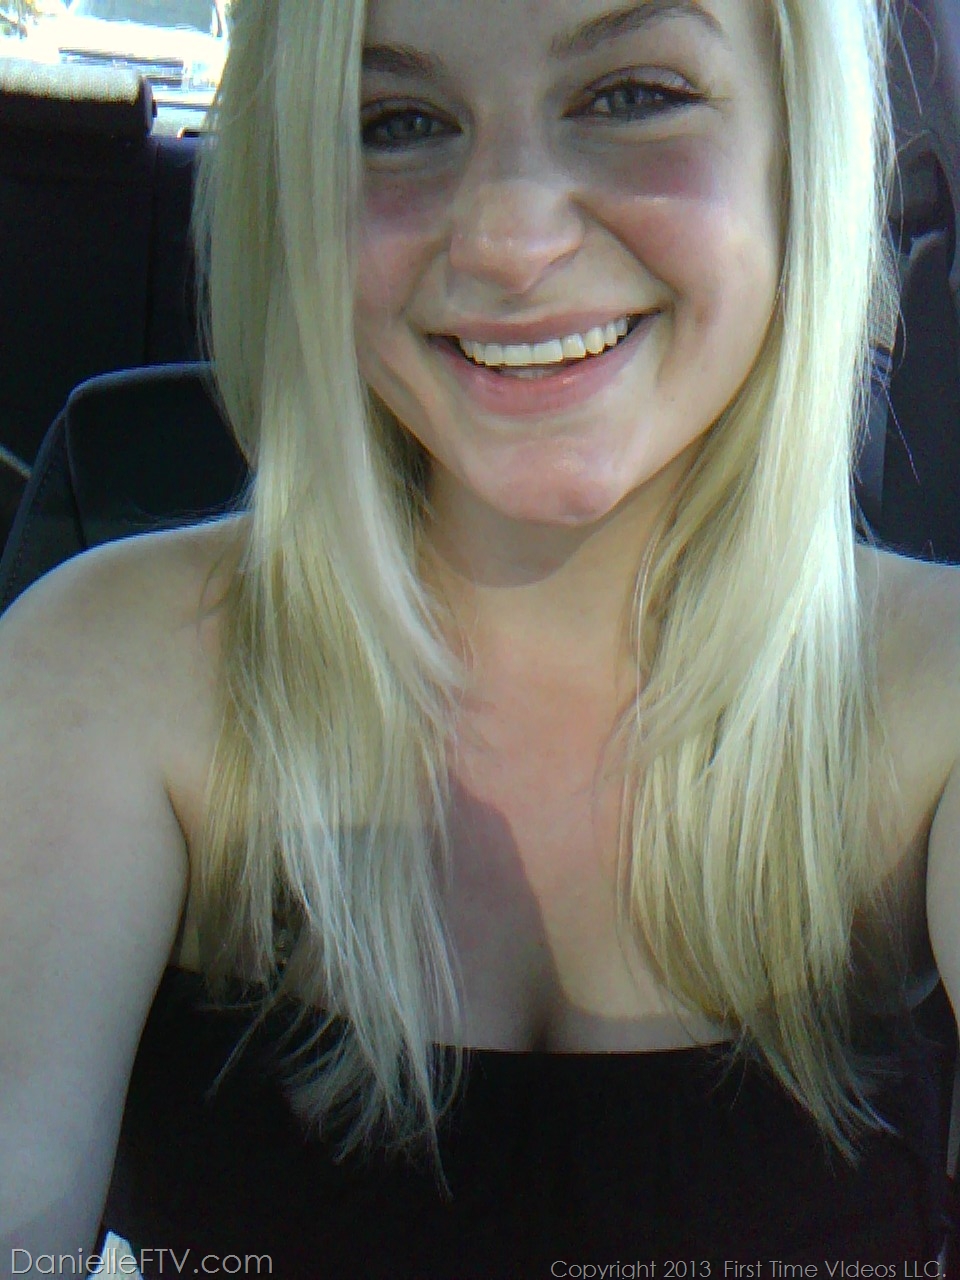 Blonde amateur Danielle Ftv dons numerous outfits for non nude selfies porn photo #422634170